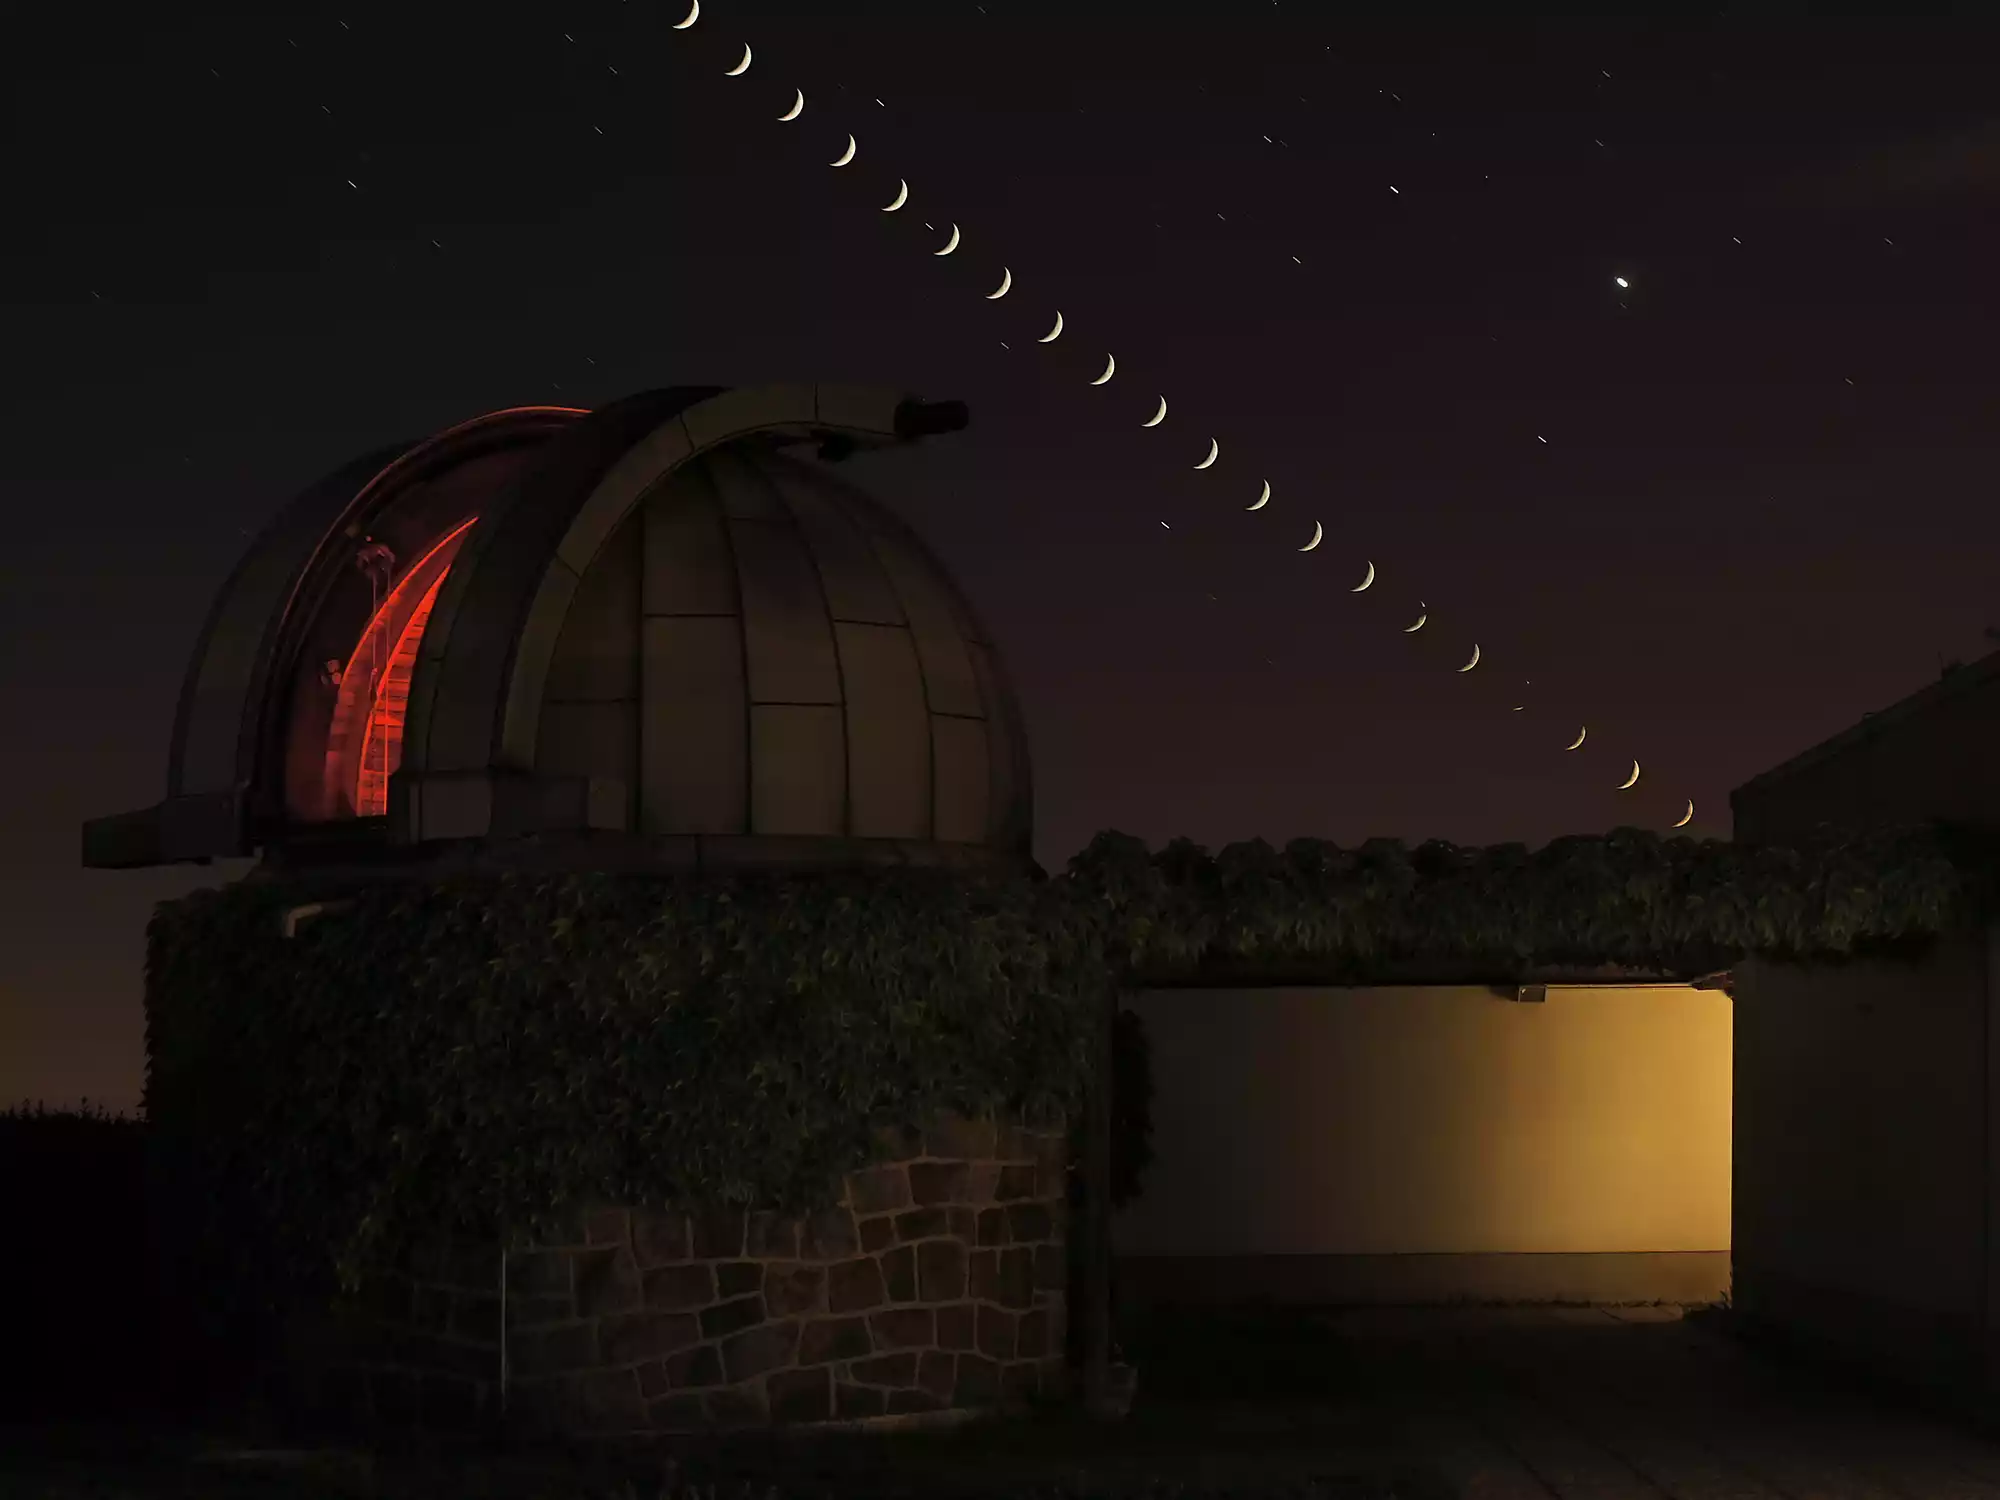 Zeiss Coudé Refraktor auf der Beobachtungsterrasse der Sternwarte Radebeul